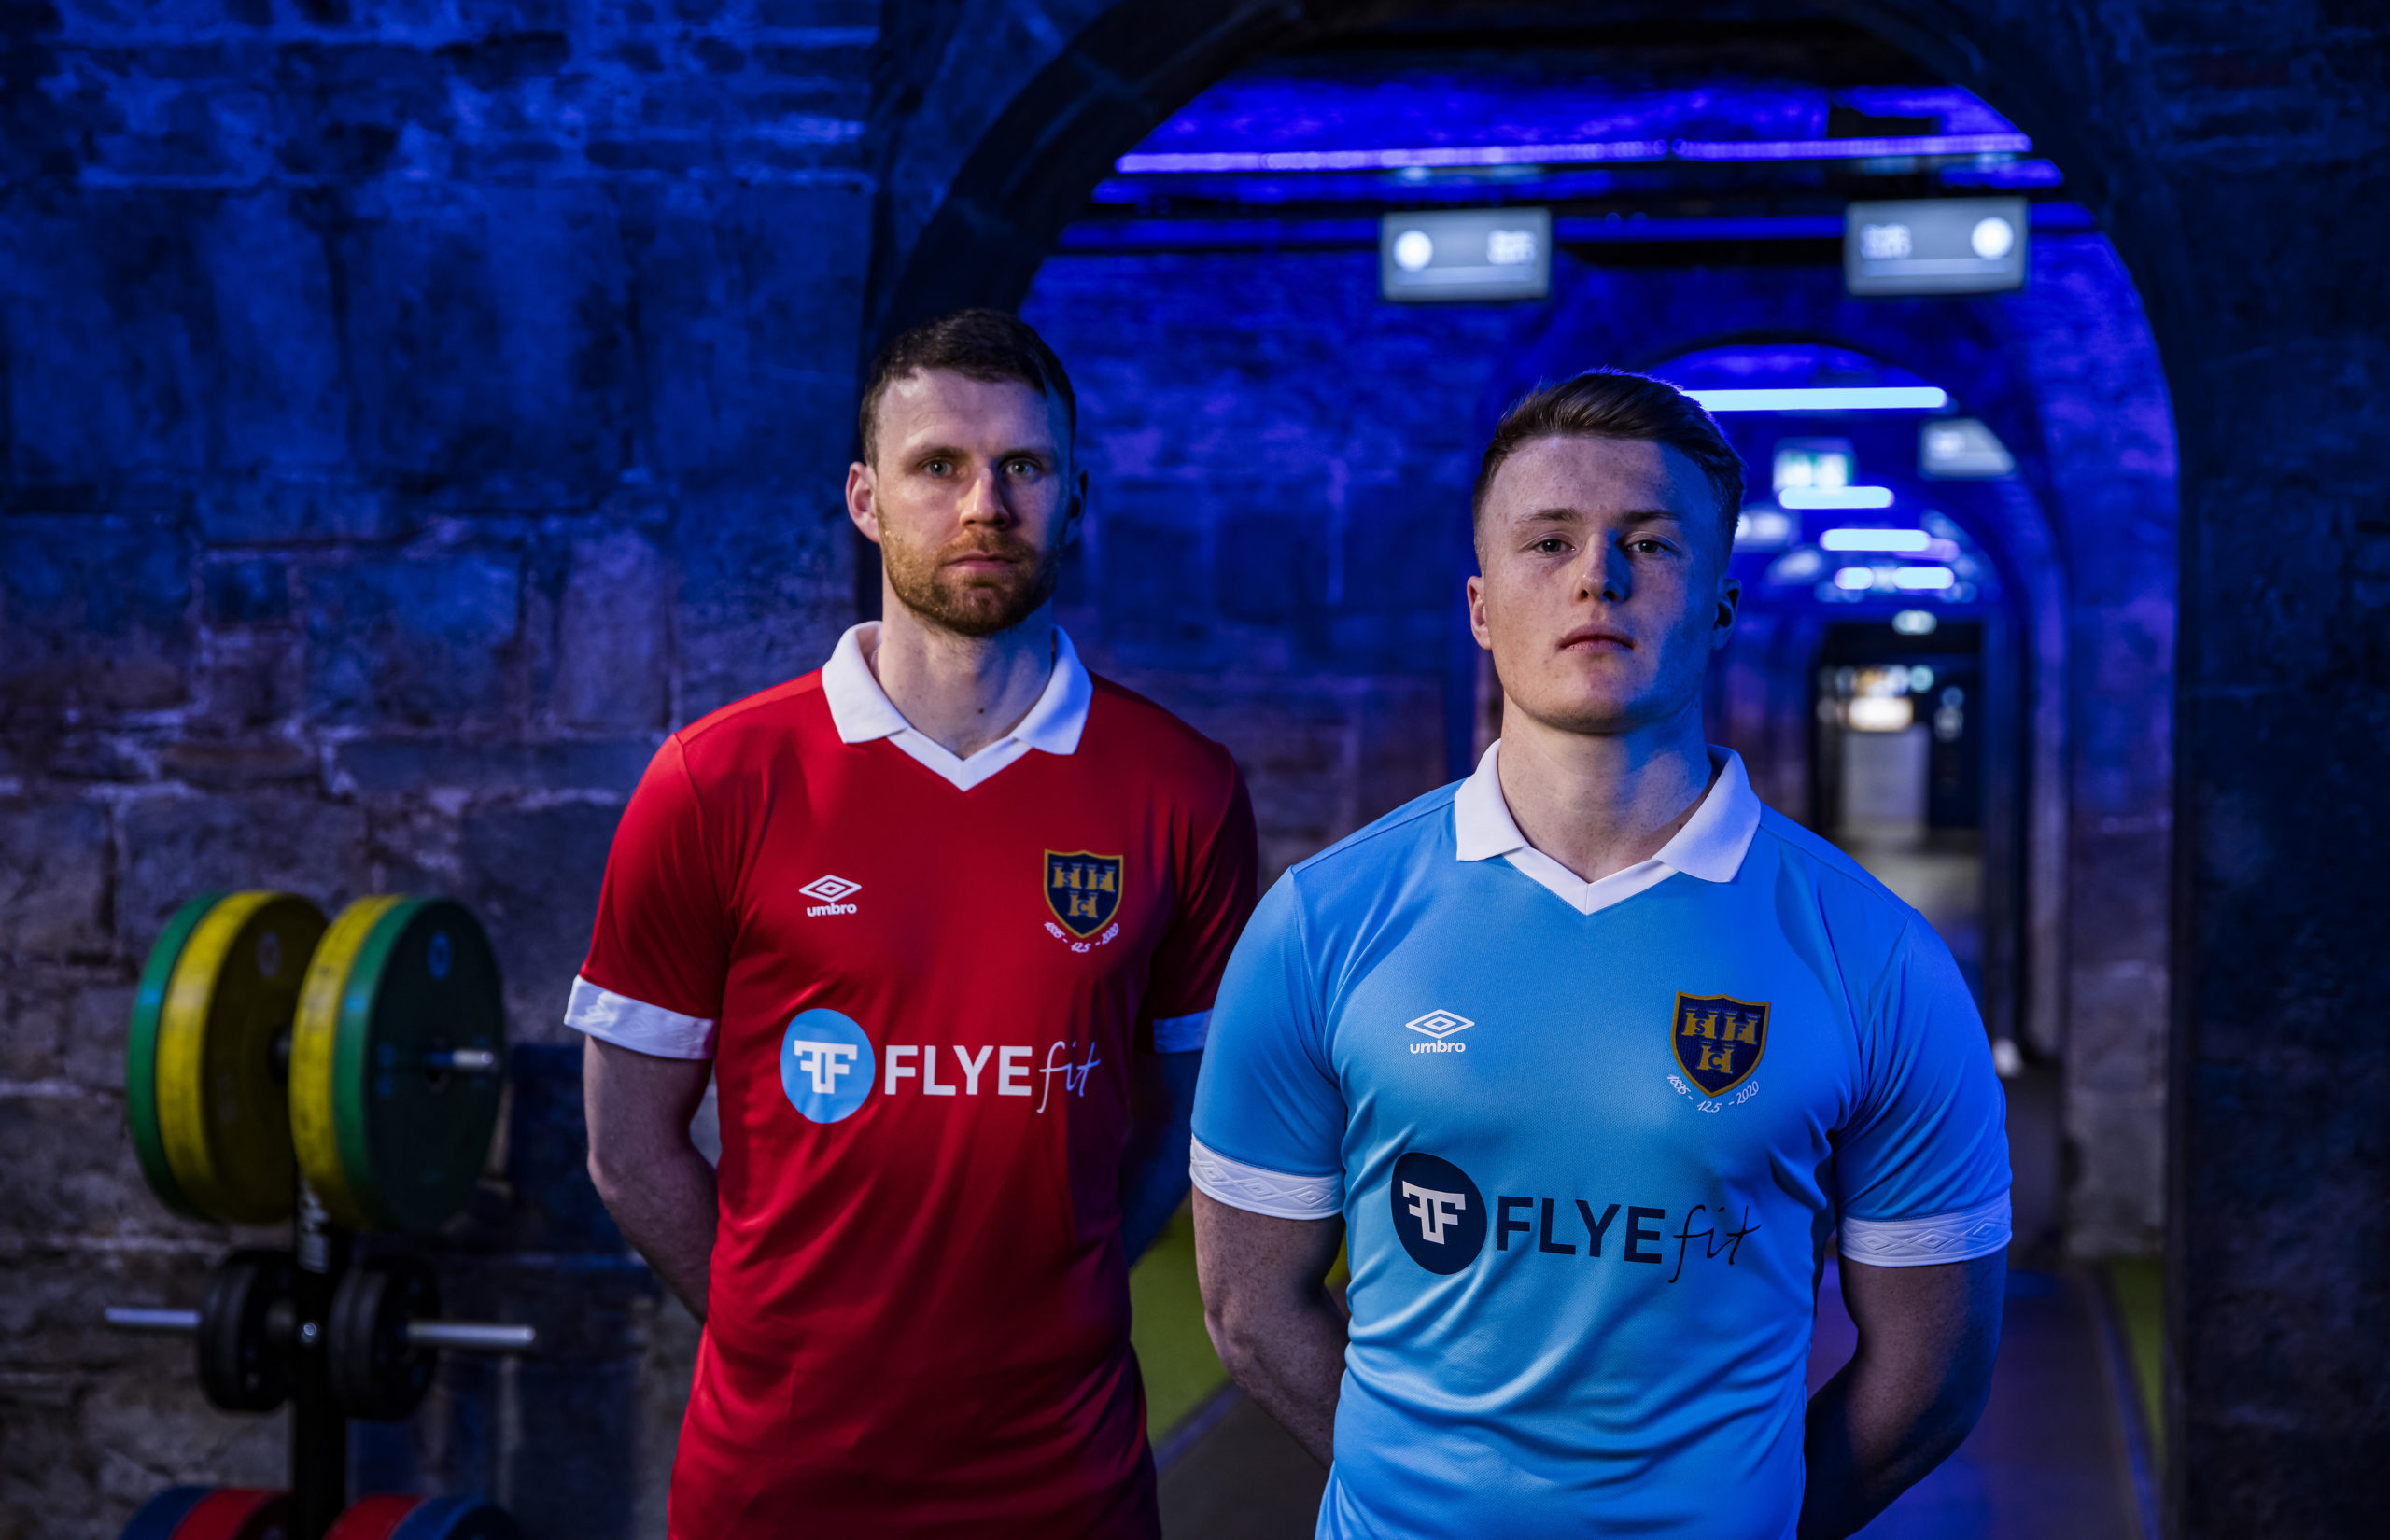 FLYEfit steps up as headline sponsor at Shelbourne FC